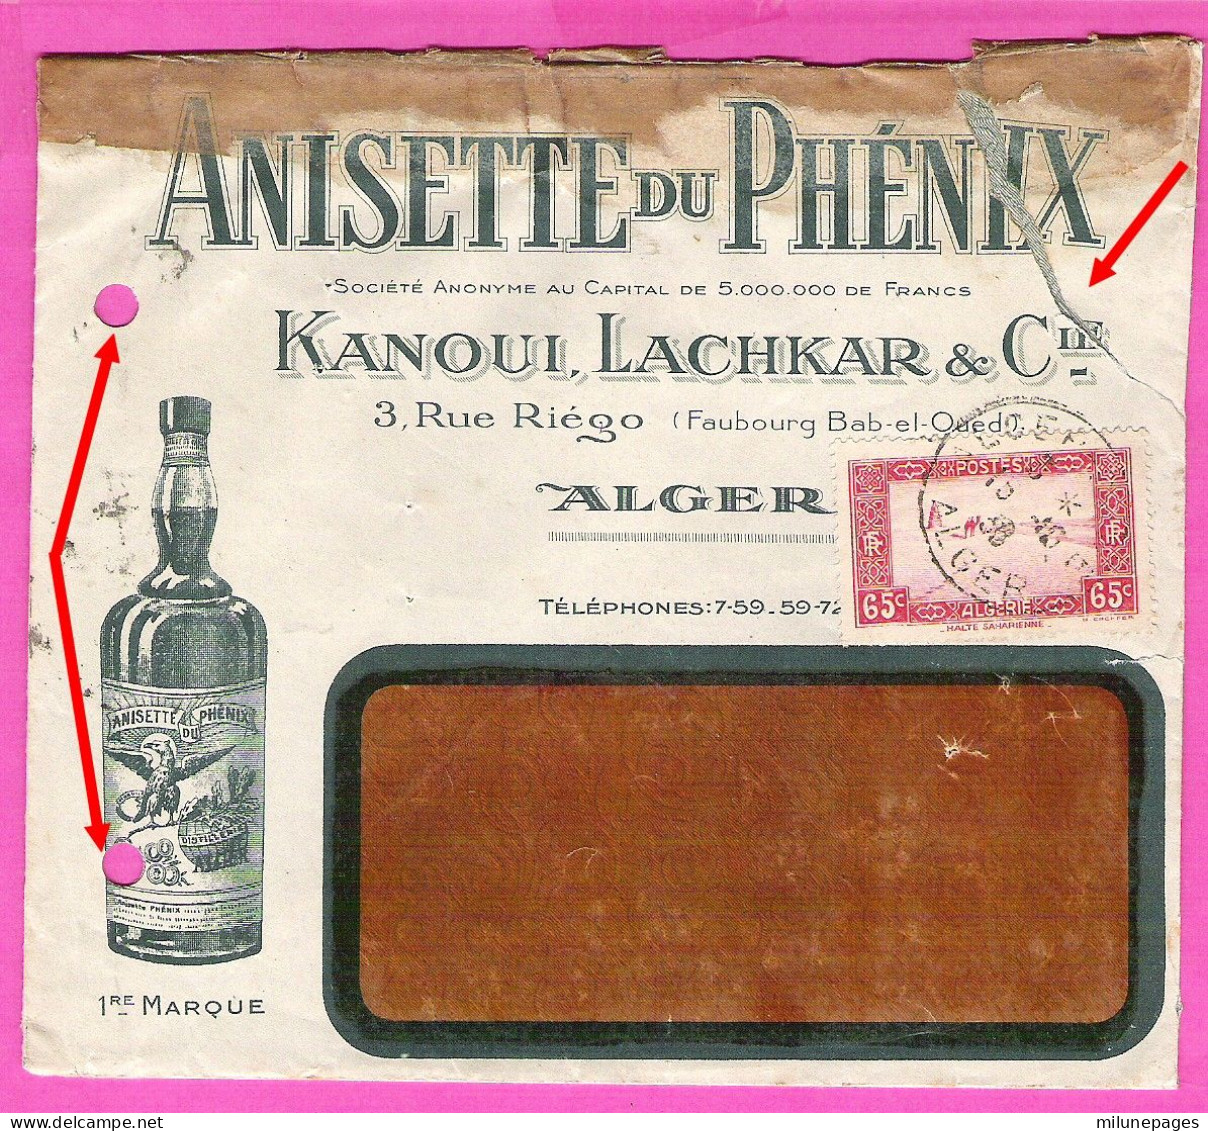 Enveloppe Illustrée Pour L'Anisette Du Phénix Kanoui, Lachkar & Cie à Alger En 1936 - Levensmiddelen